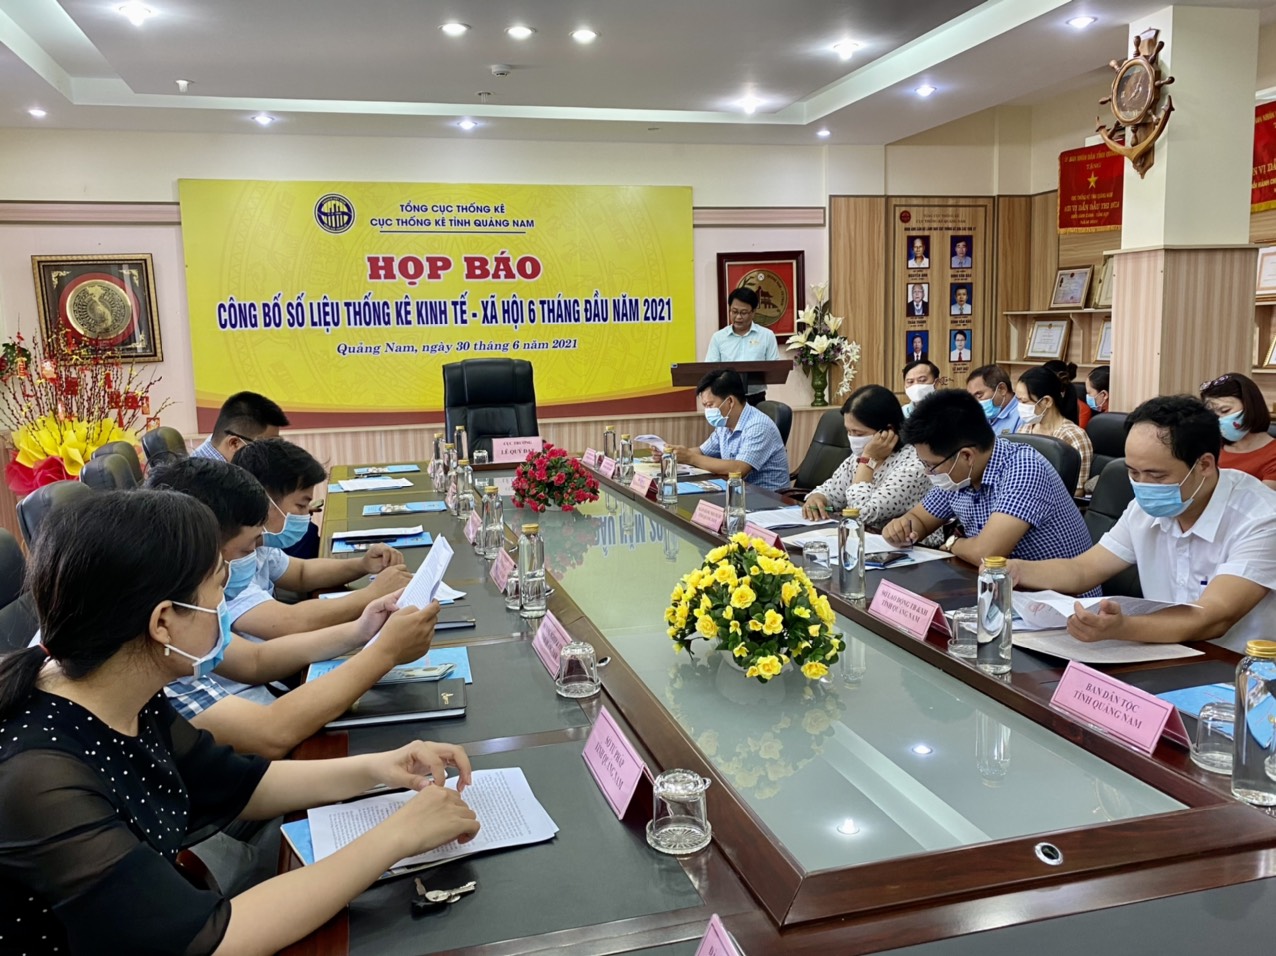 Cục Thống kê tỉnh tổ chức họp báo công bố số liệu thống kê kinh tế - xã hội của tỉnh Quảng Nam 6 tháng đầu năm 2021.